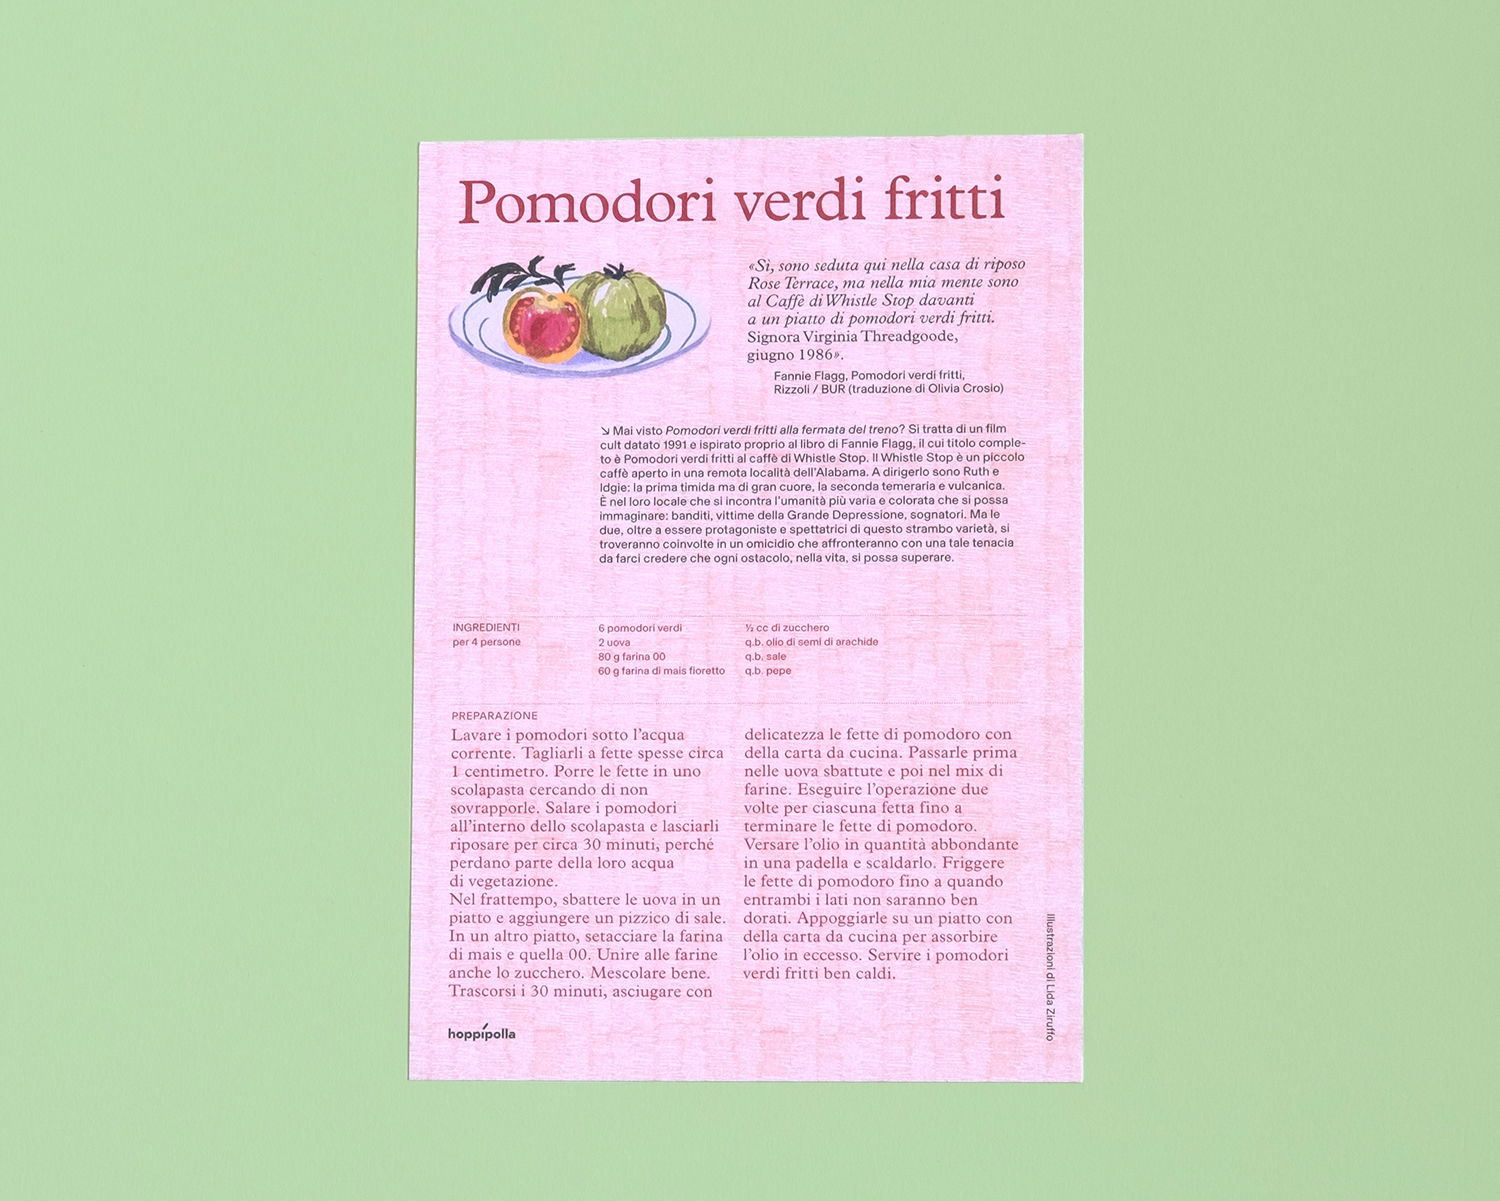 Cartolina, Ricetta illustrata Pomodori verdi fritti